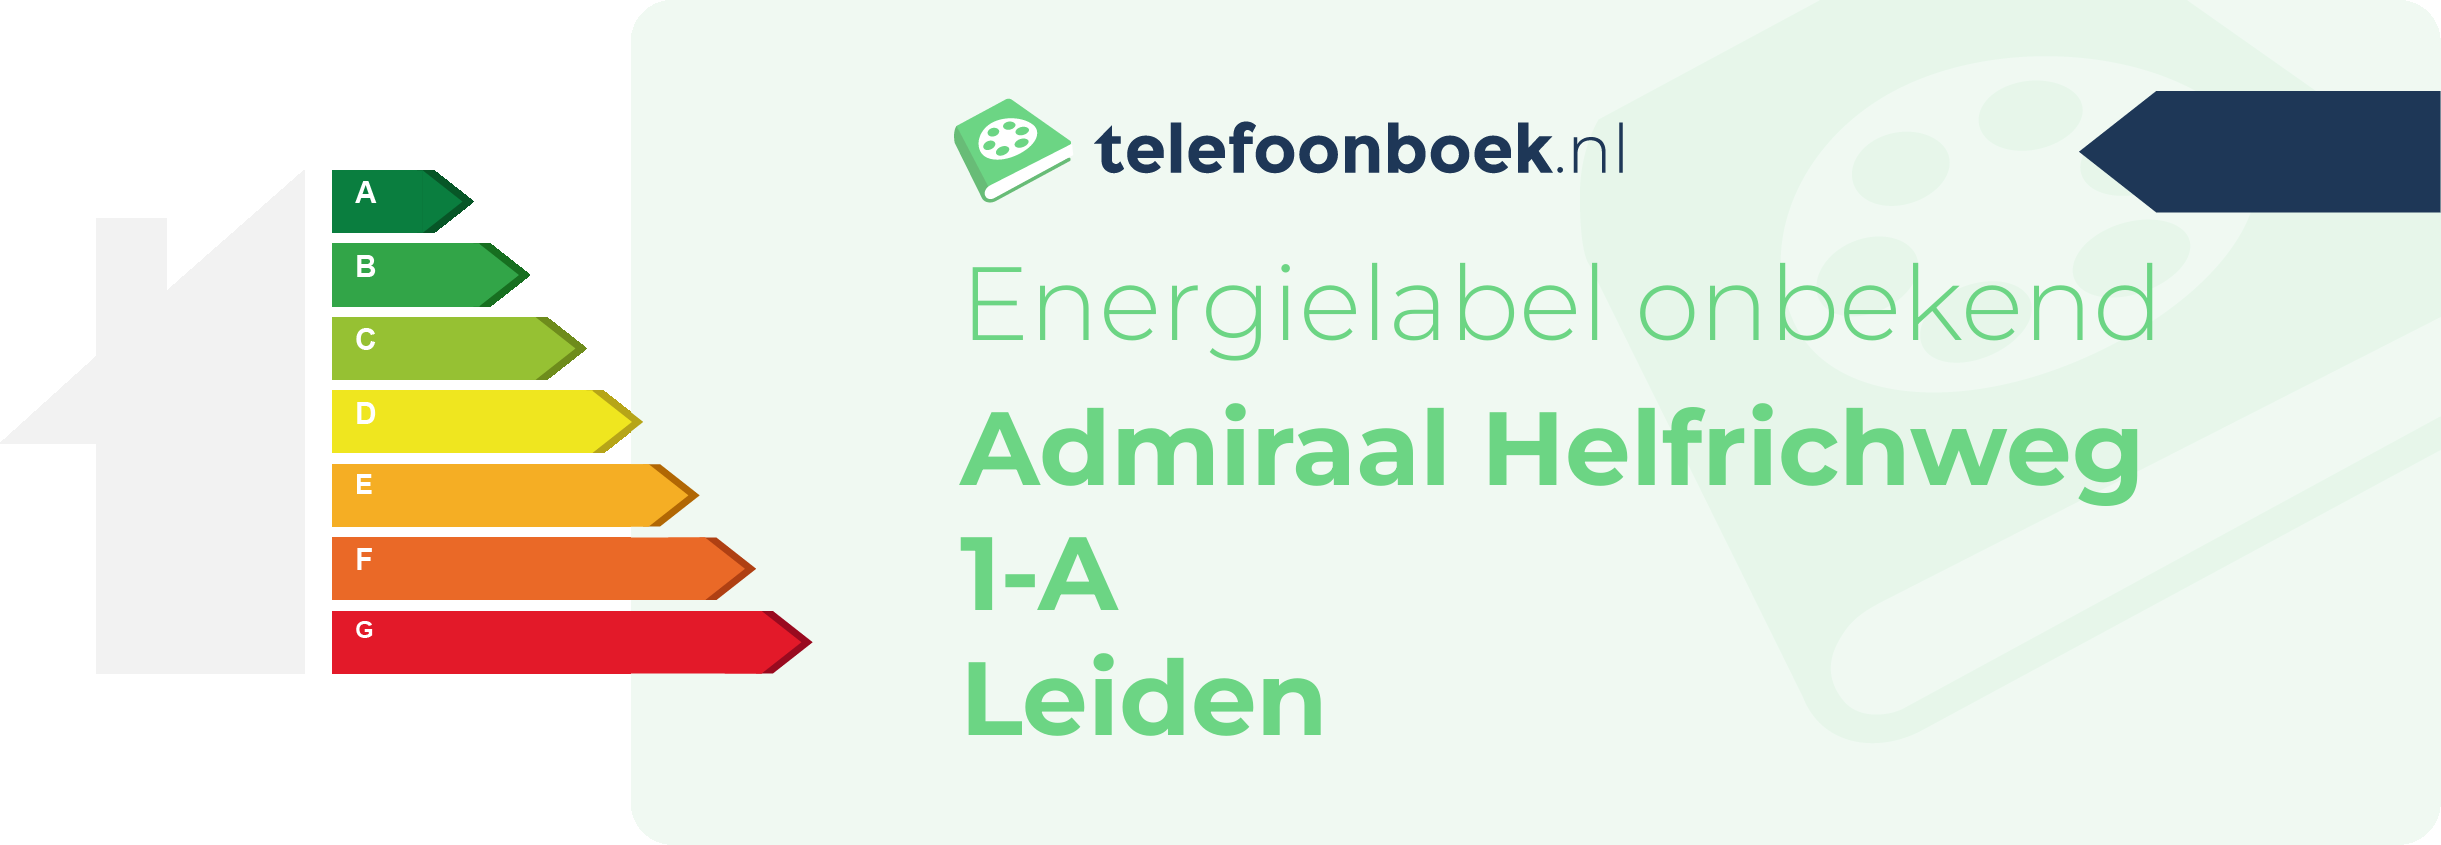 Energielabel Admiraal Helfrichweg 1-A Leiden